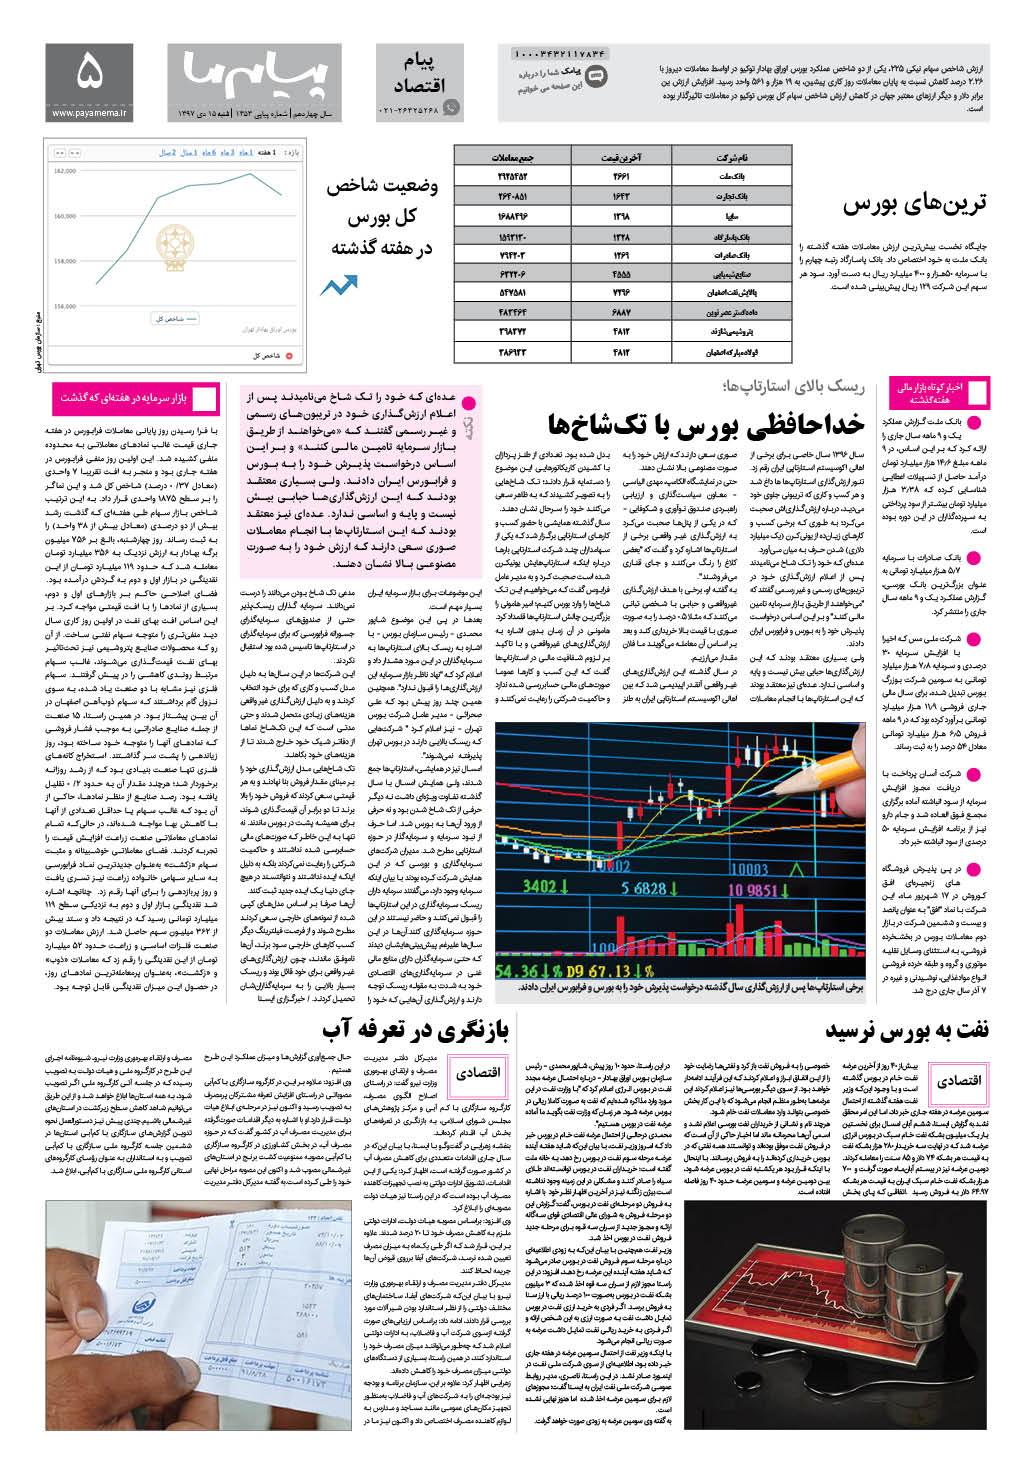 صفحه پیام اقتصادی شماره 1353 روزنامه پیام ما